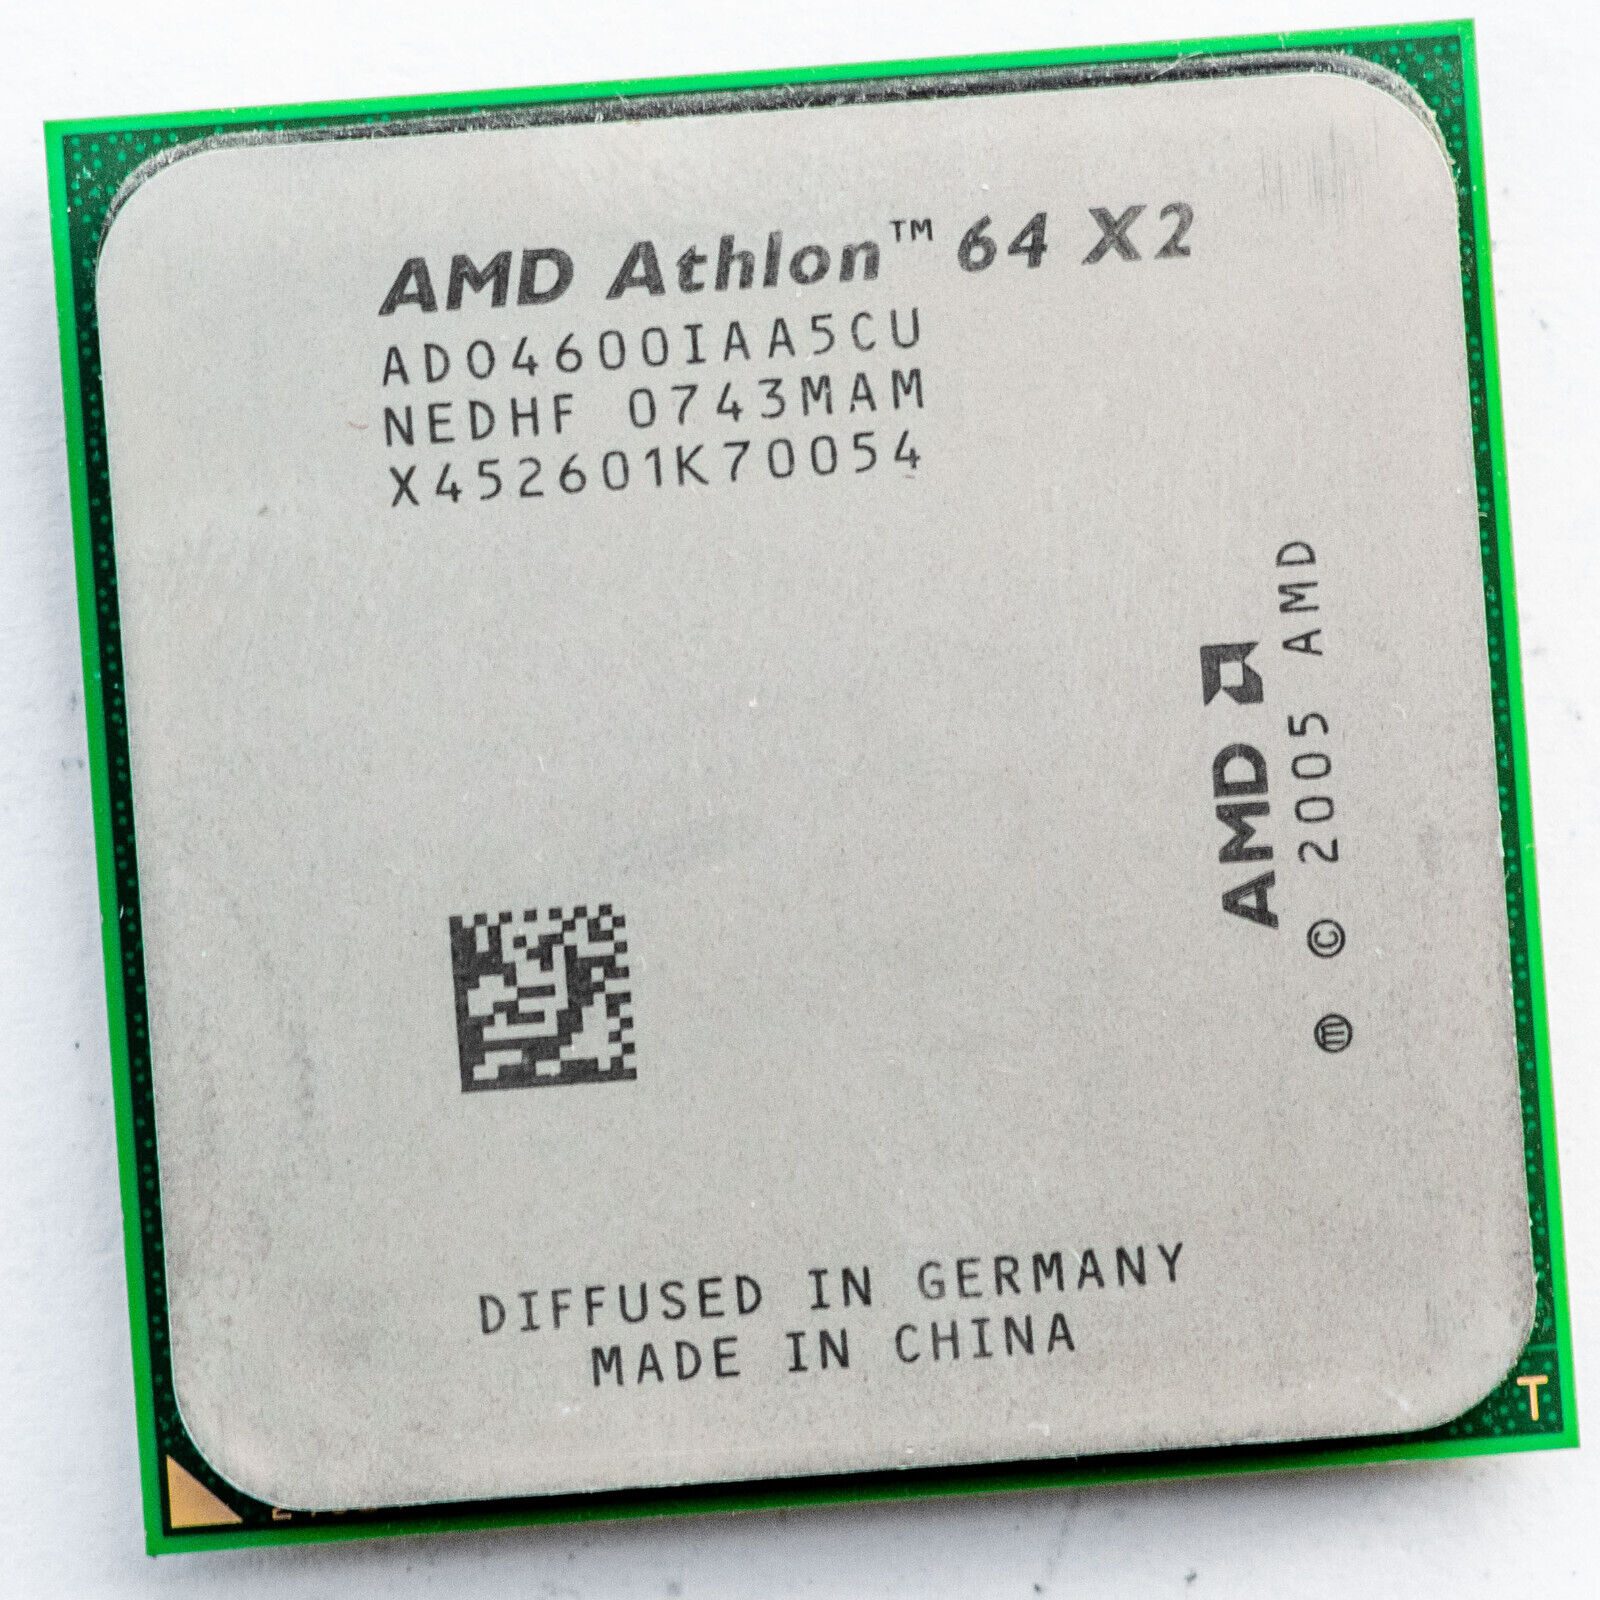 AMD Athlon 64 X2 4600+ ADO4600IAA5CU 2.4GHz Dual Core AM2 Processor Windsor 65W